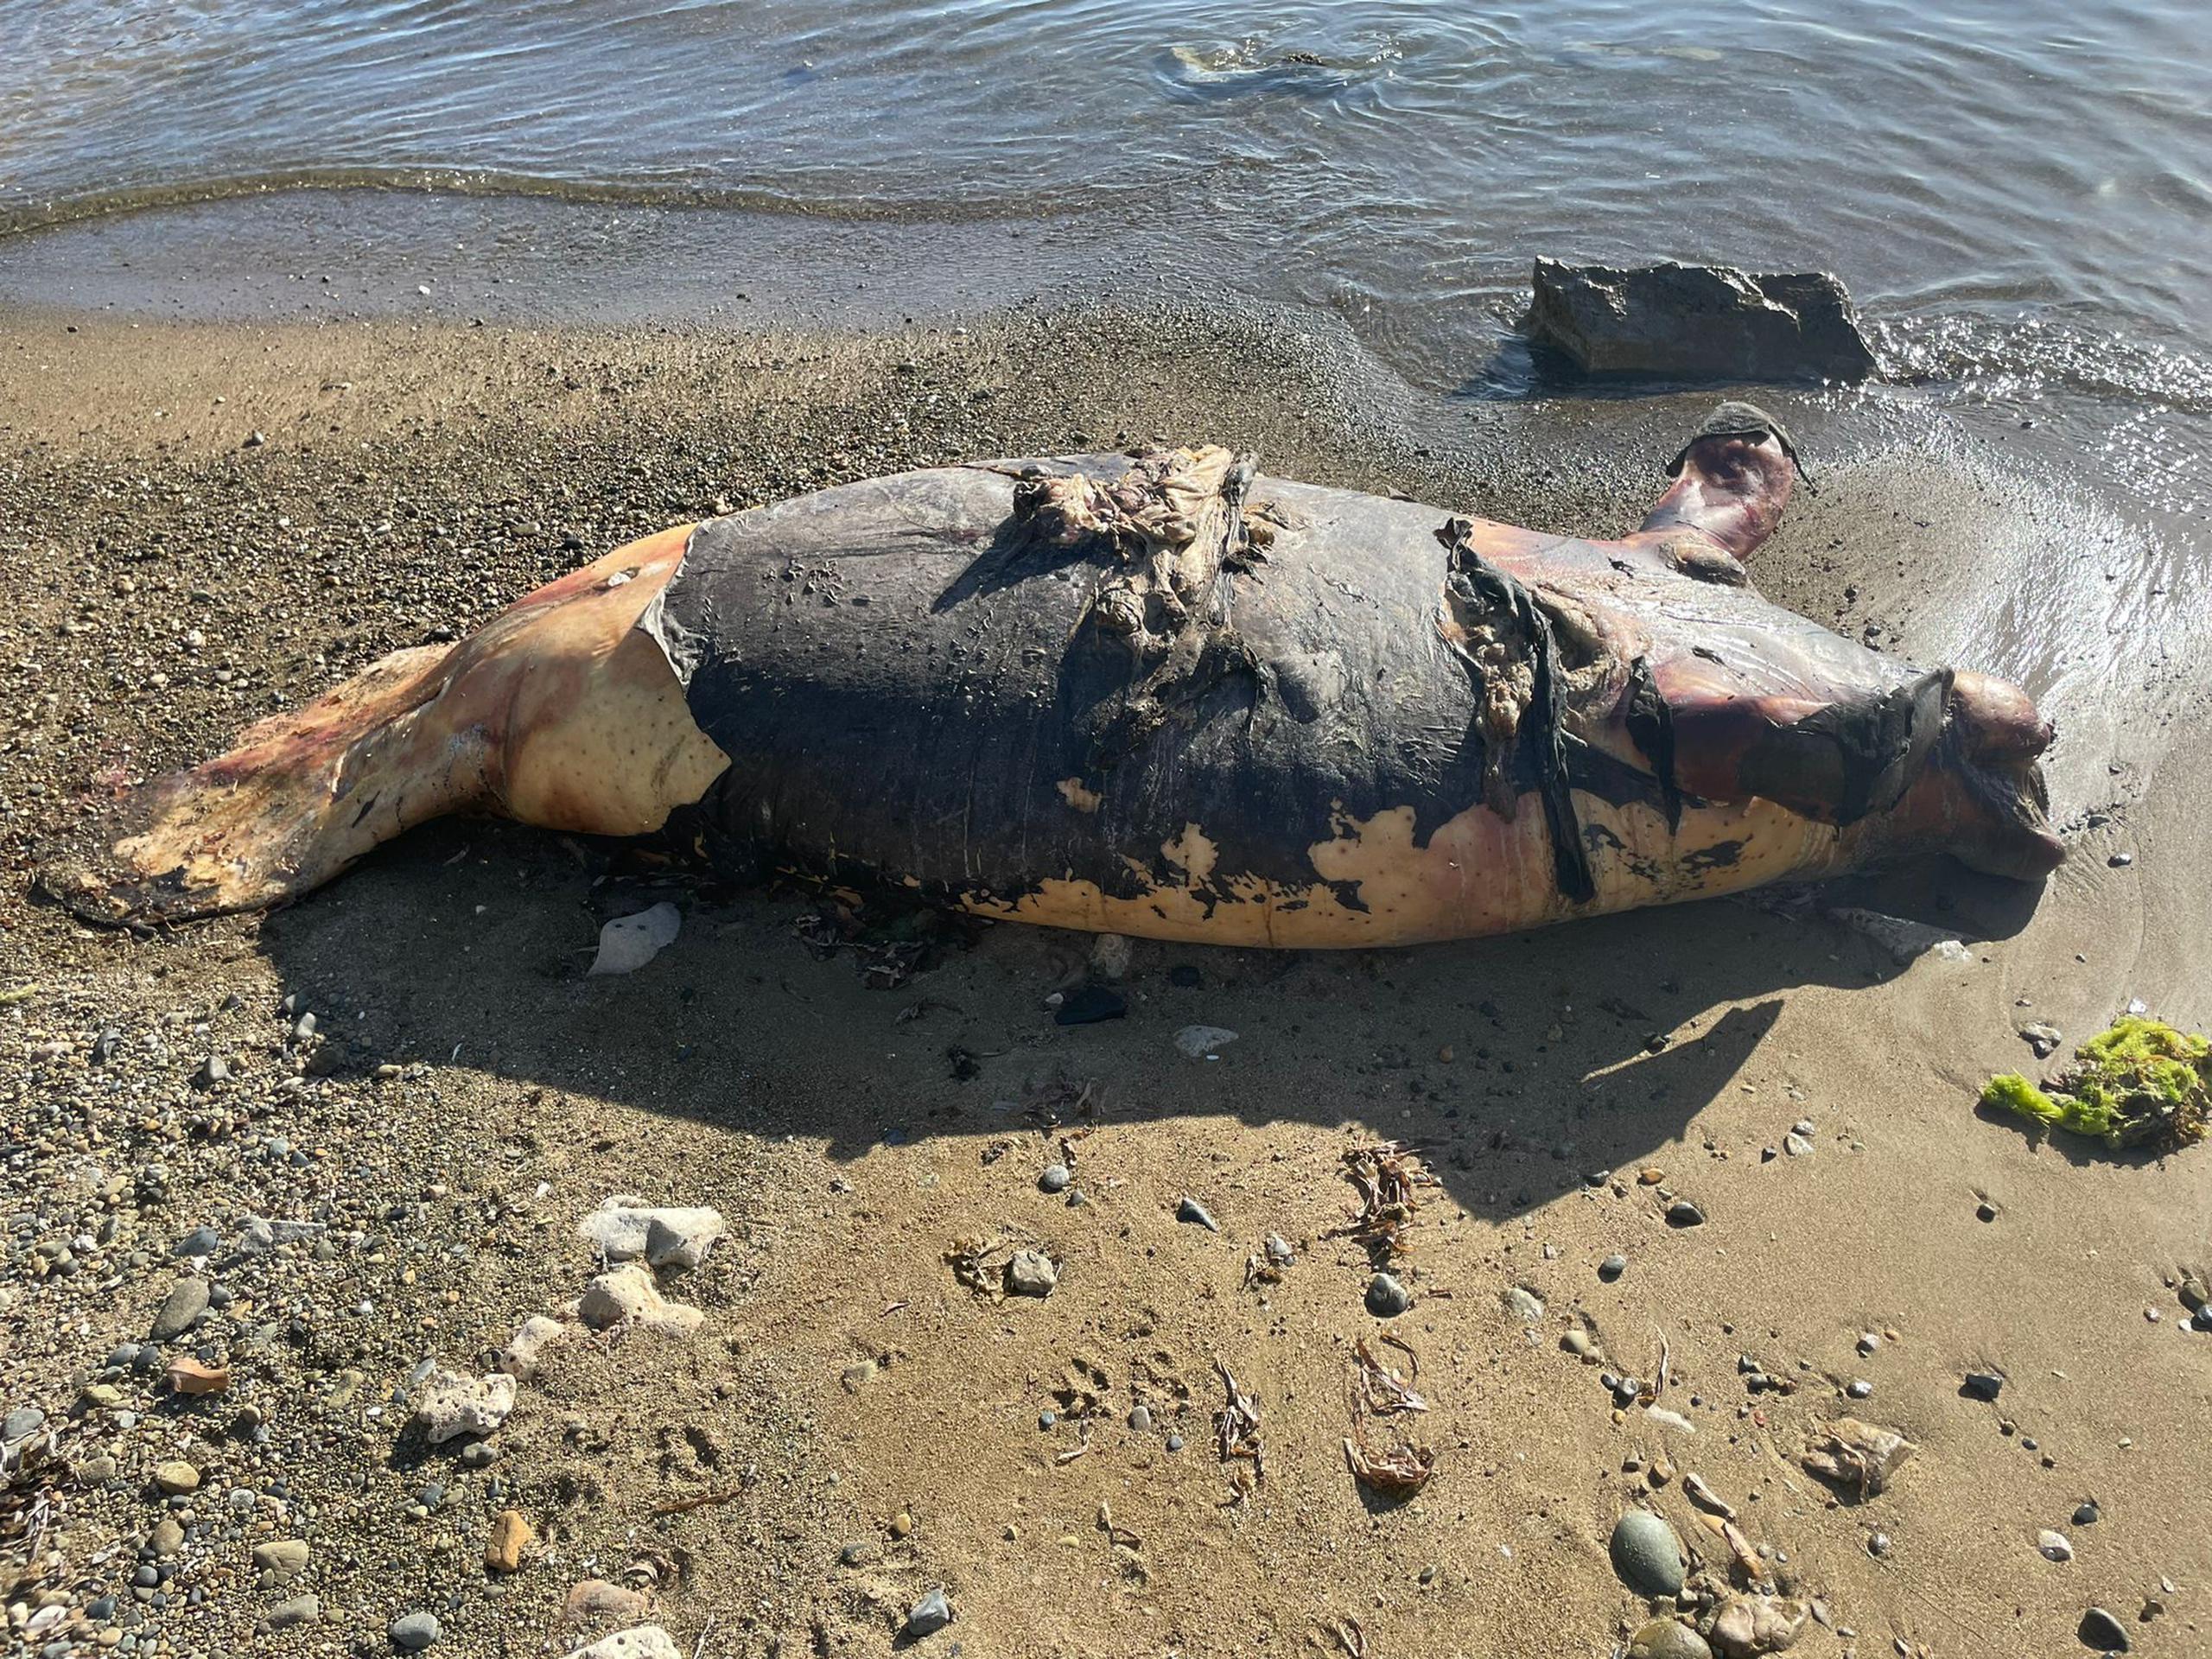 El manatí adulto murió al ser impactado por una embarcación, según informó el Departamento de Recursos Naturales.